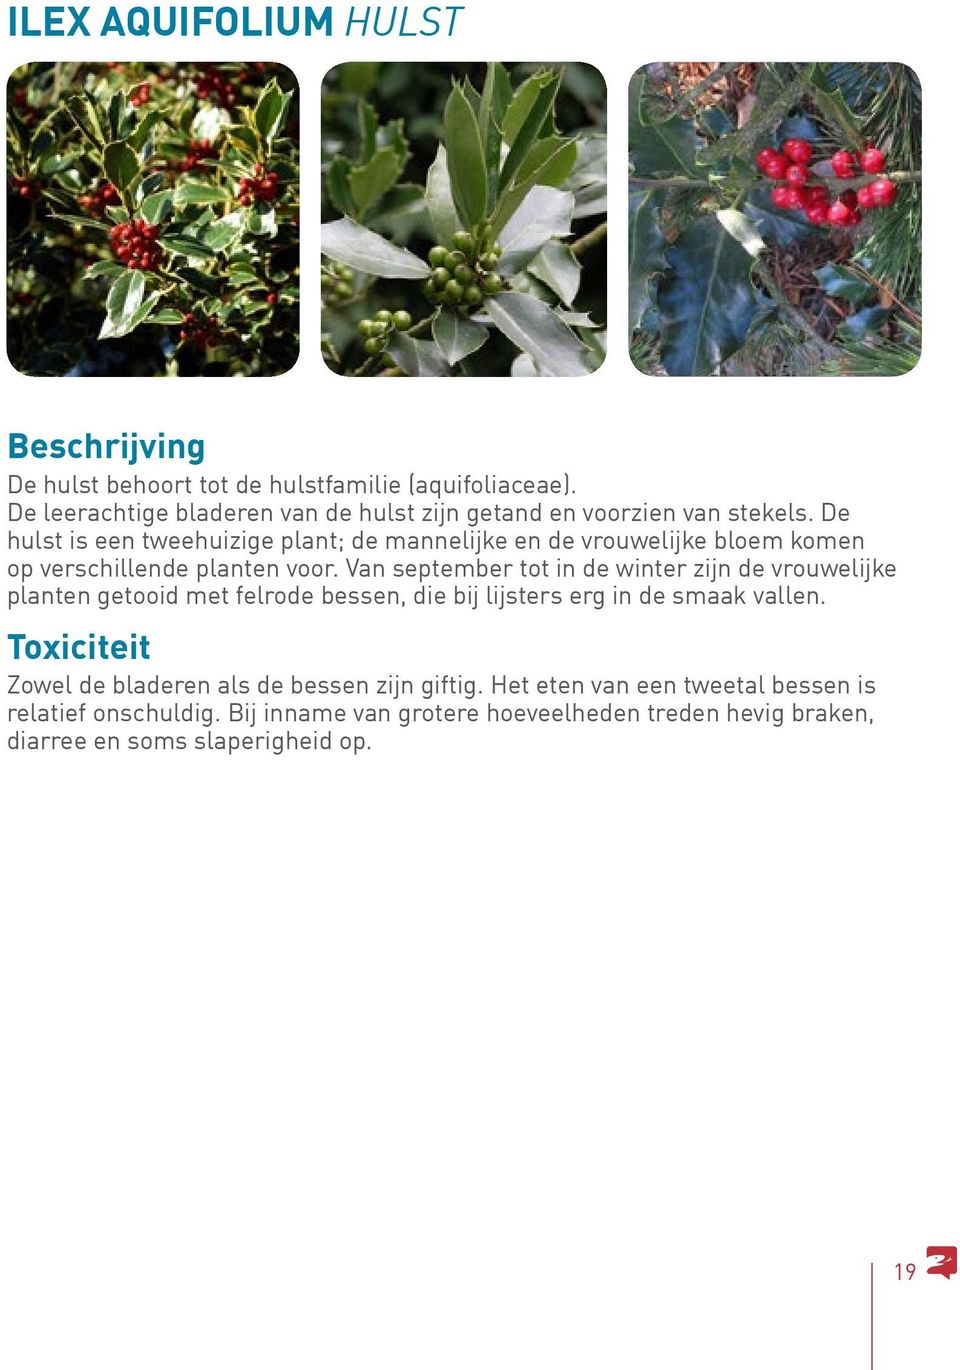 De hulst is een tweehuizige plant; de mannelijke en de vrouwelijke bloem komen op verschillende planten voor.